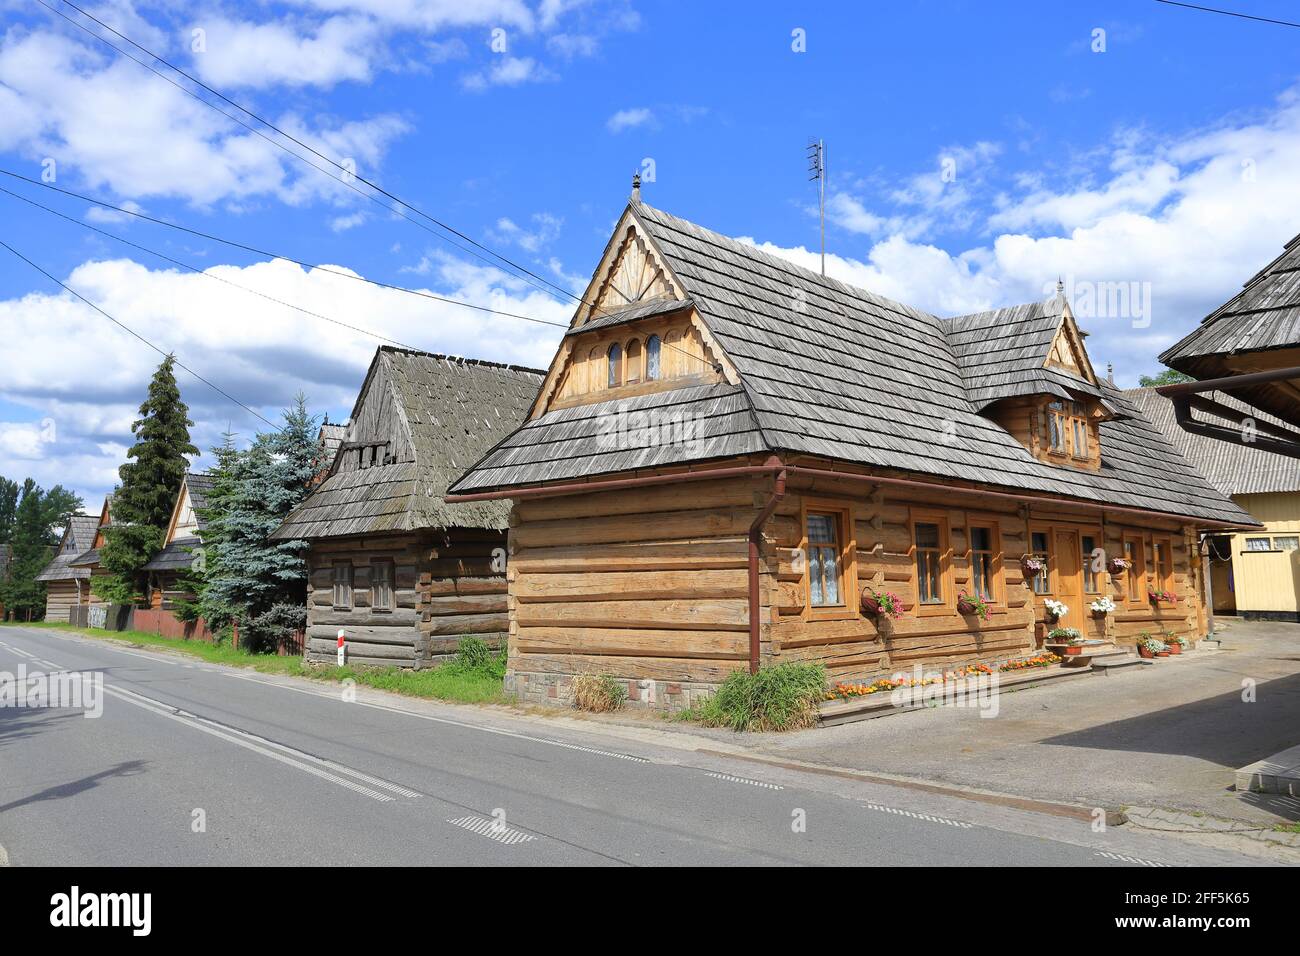 Maisons en bois, Chocholow, Pohale, Pologne Banque D'Images